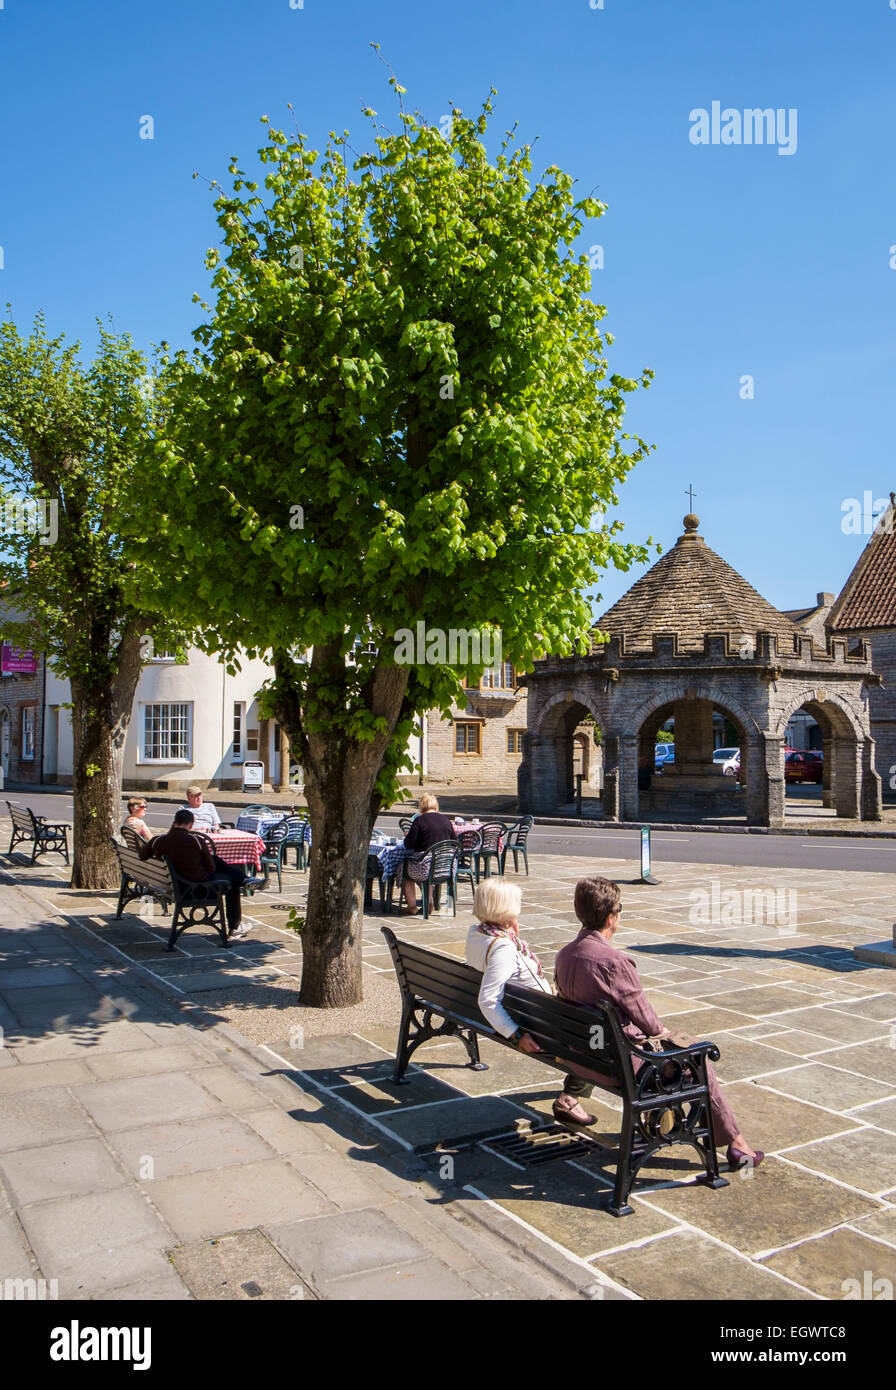 Somerton, eine schöne alte kleine Marktstadt in Somerset, England, Vereinigtes Königreich mit Markt überqueren und Menschen sitzen auf einer Bank Stockfoto